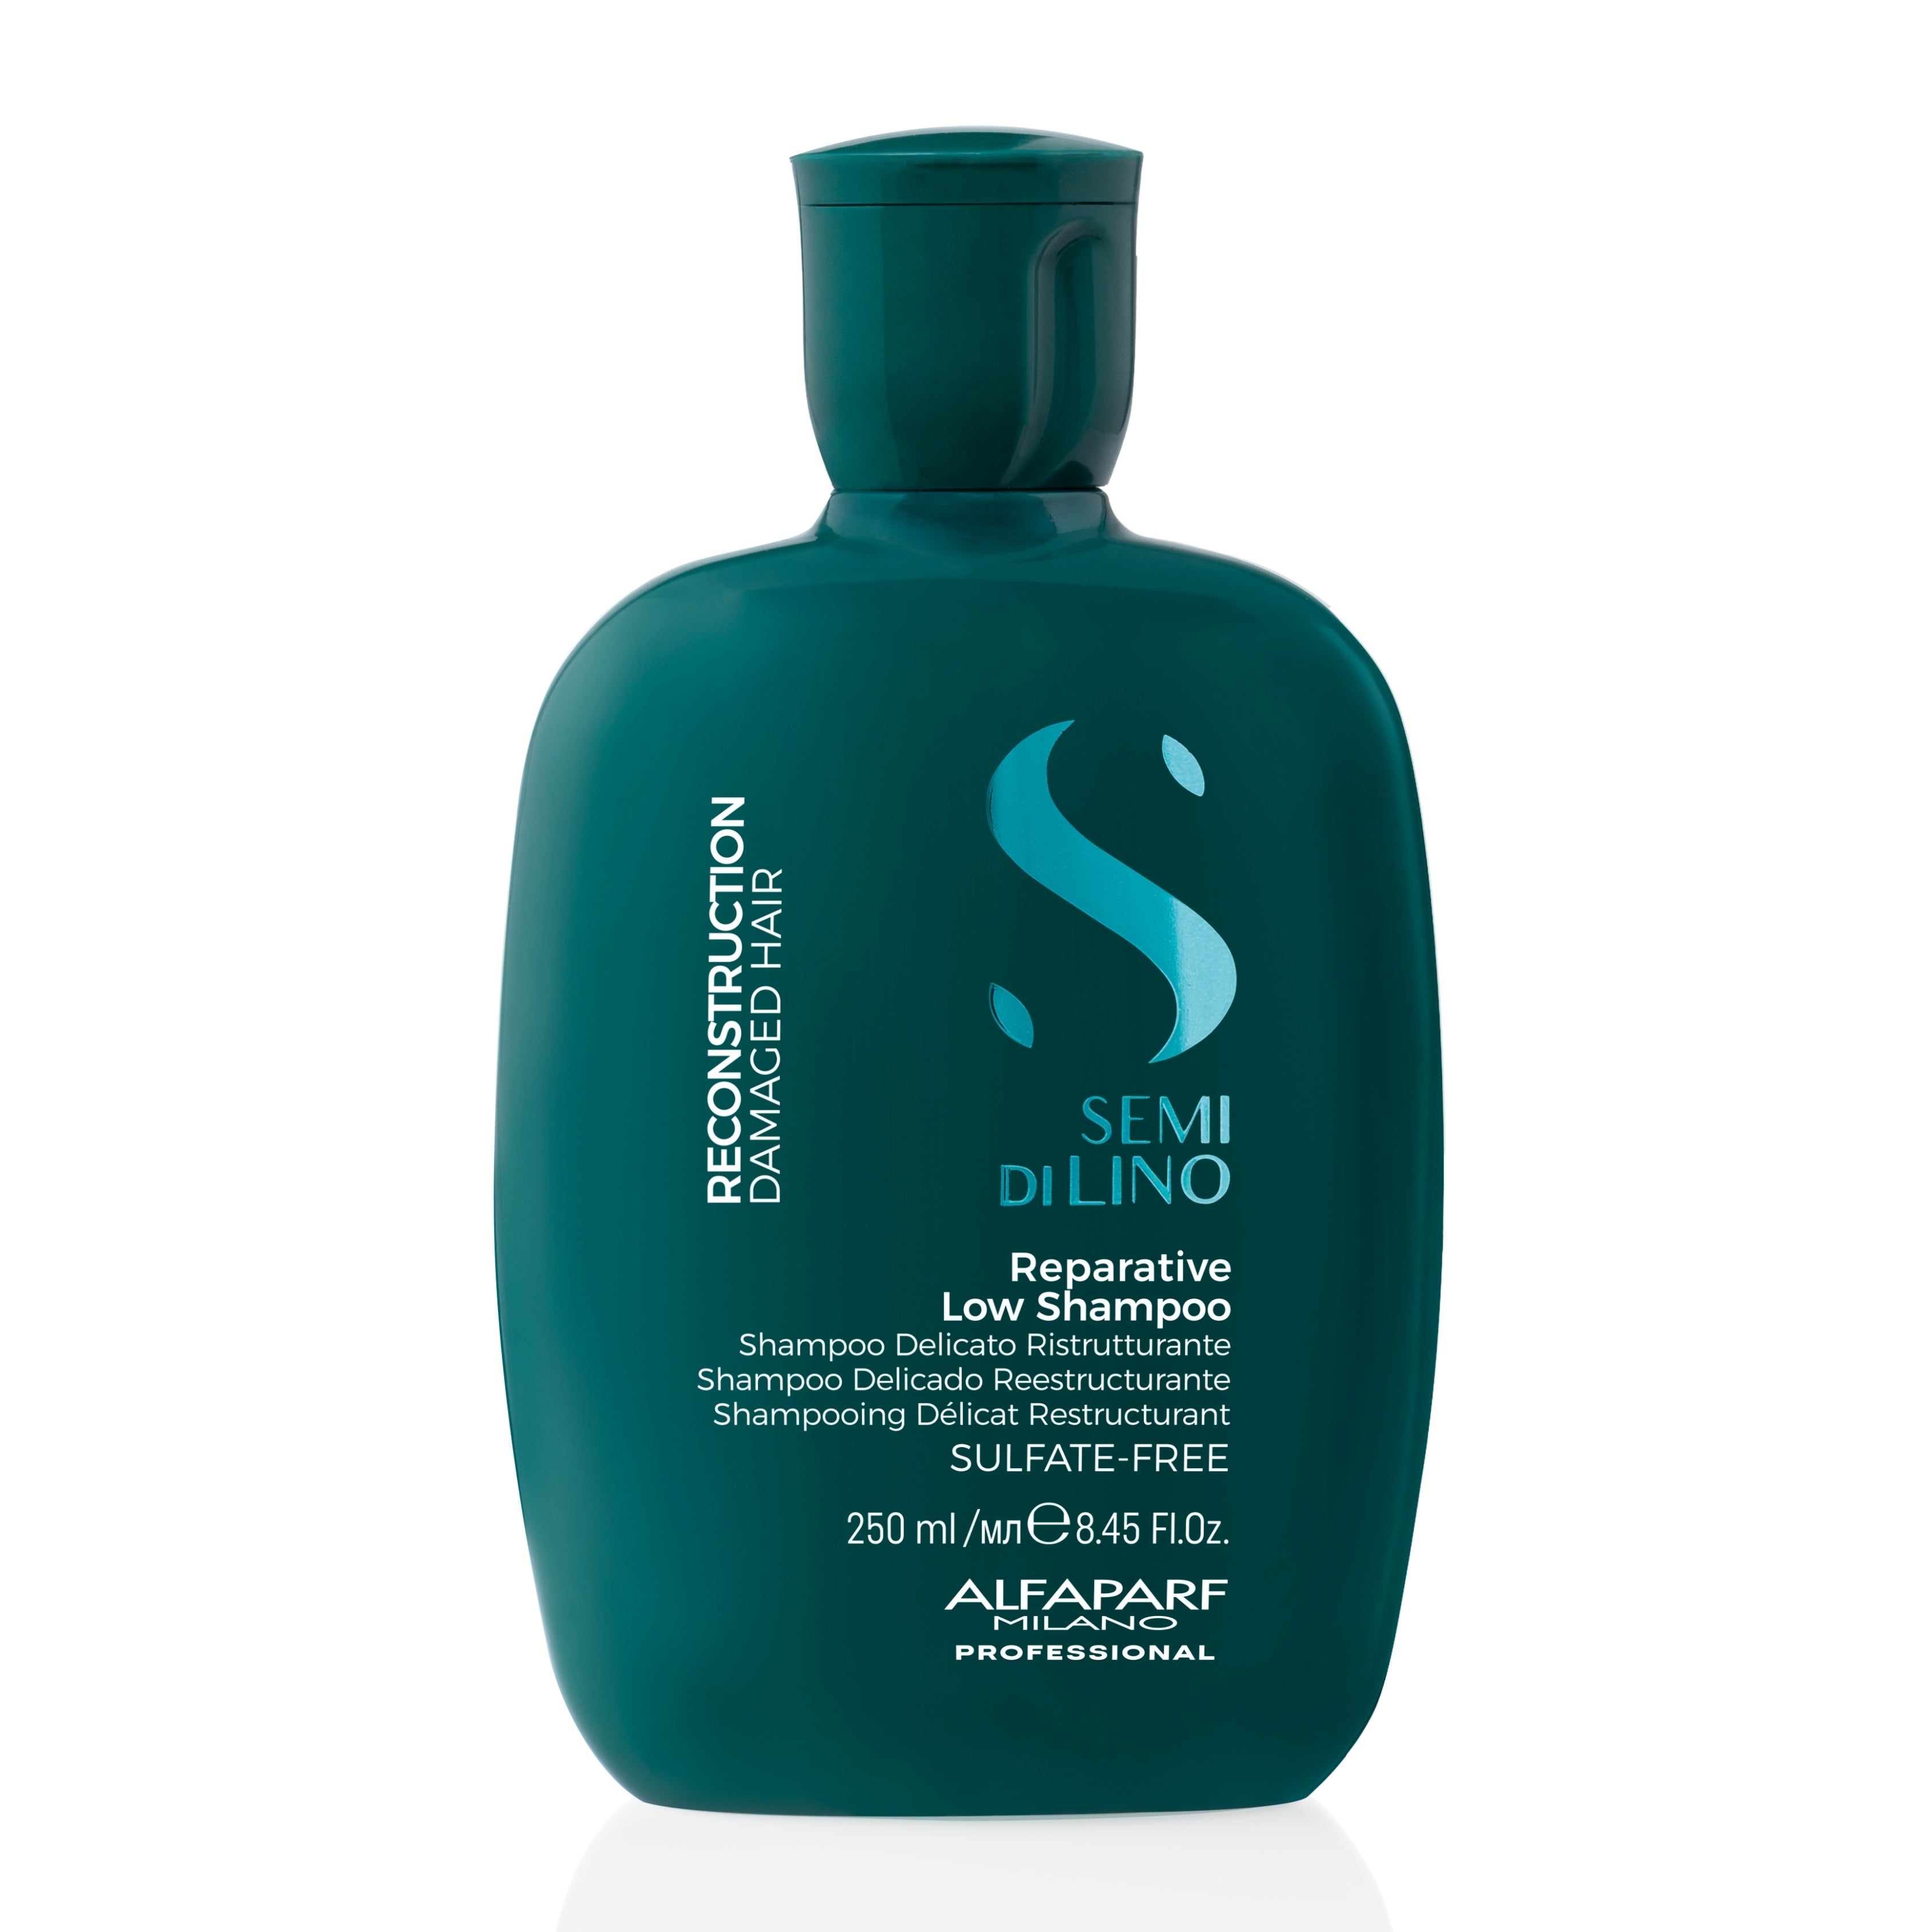 ALFAPARF MILANO SEMI DI LINO Reparative Low Shampoo 250ML